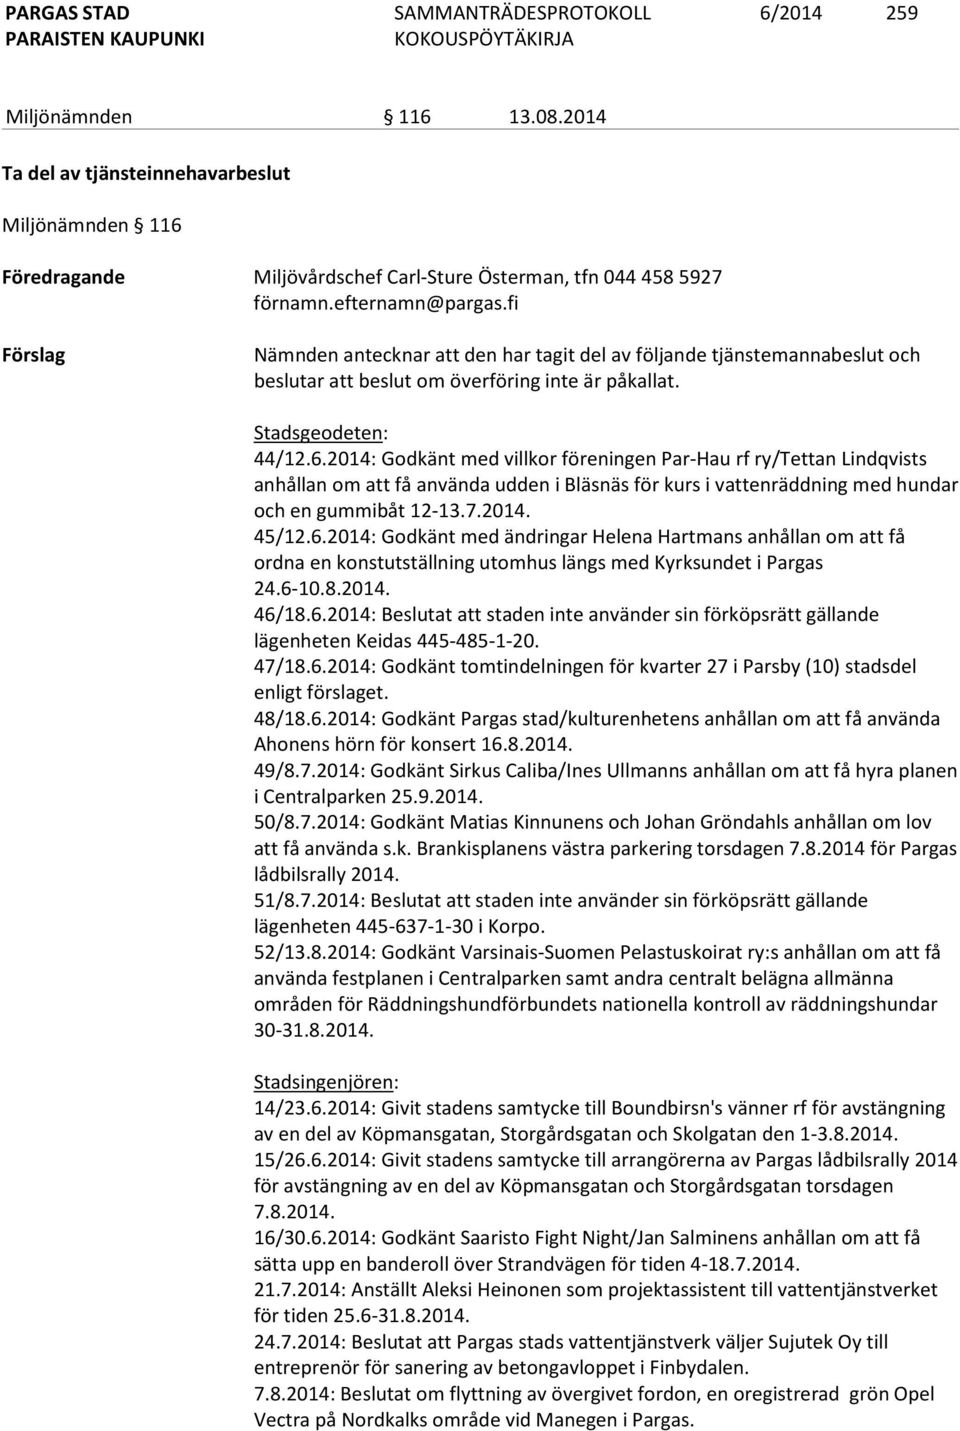 2014: Godkänt med villkor föreningen Par-Hau rf ry/tettan Lindqvists anhållan om att få använda udden i Bläsnäs för kurs i vattenräddning med hundar och en gummibåt 12-13.7.2014. 45/12.6.